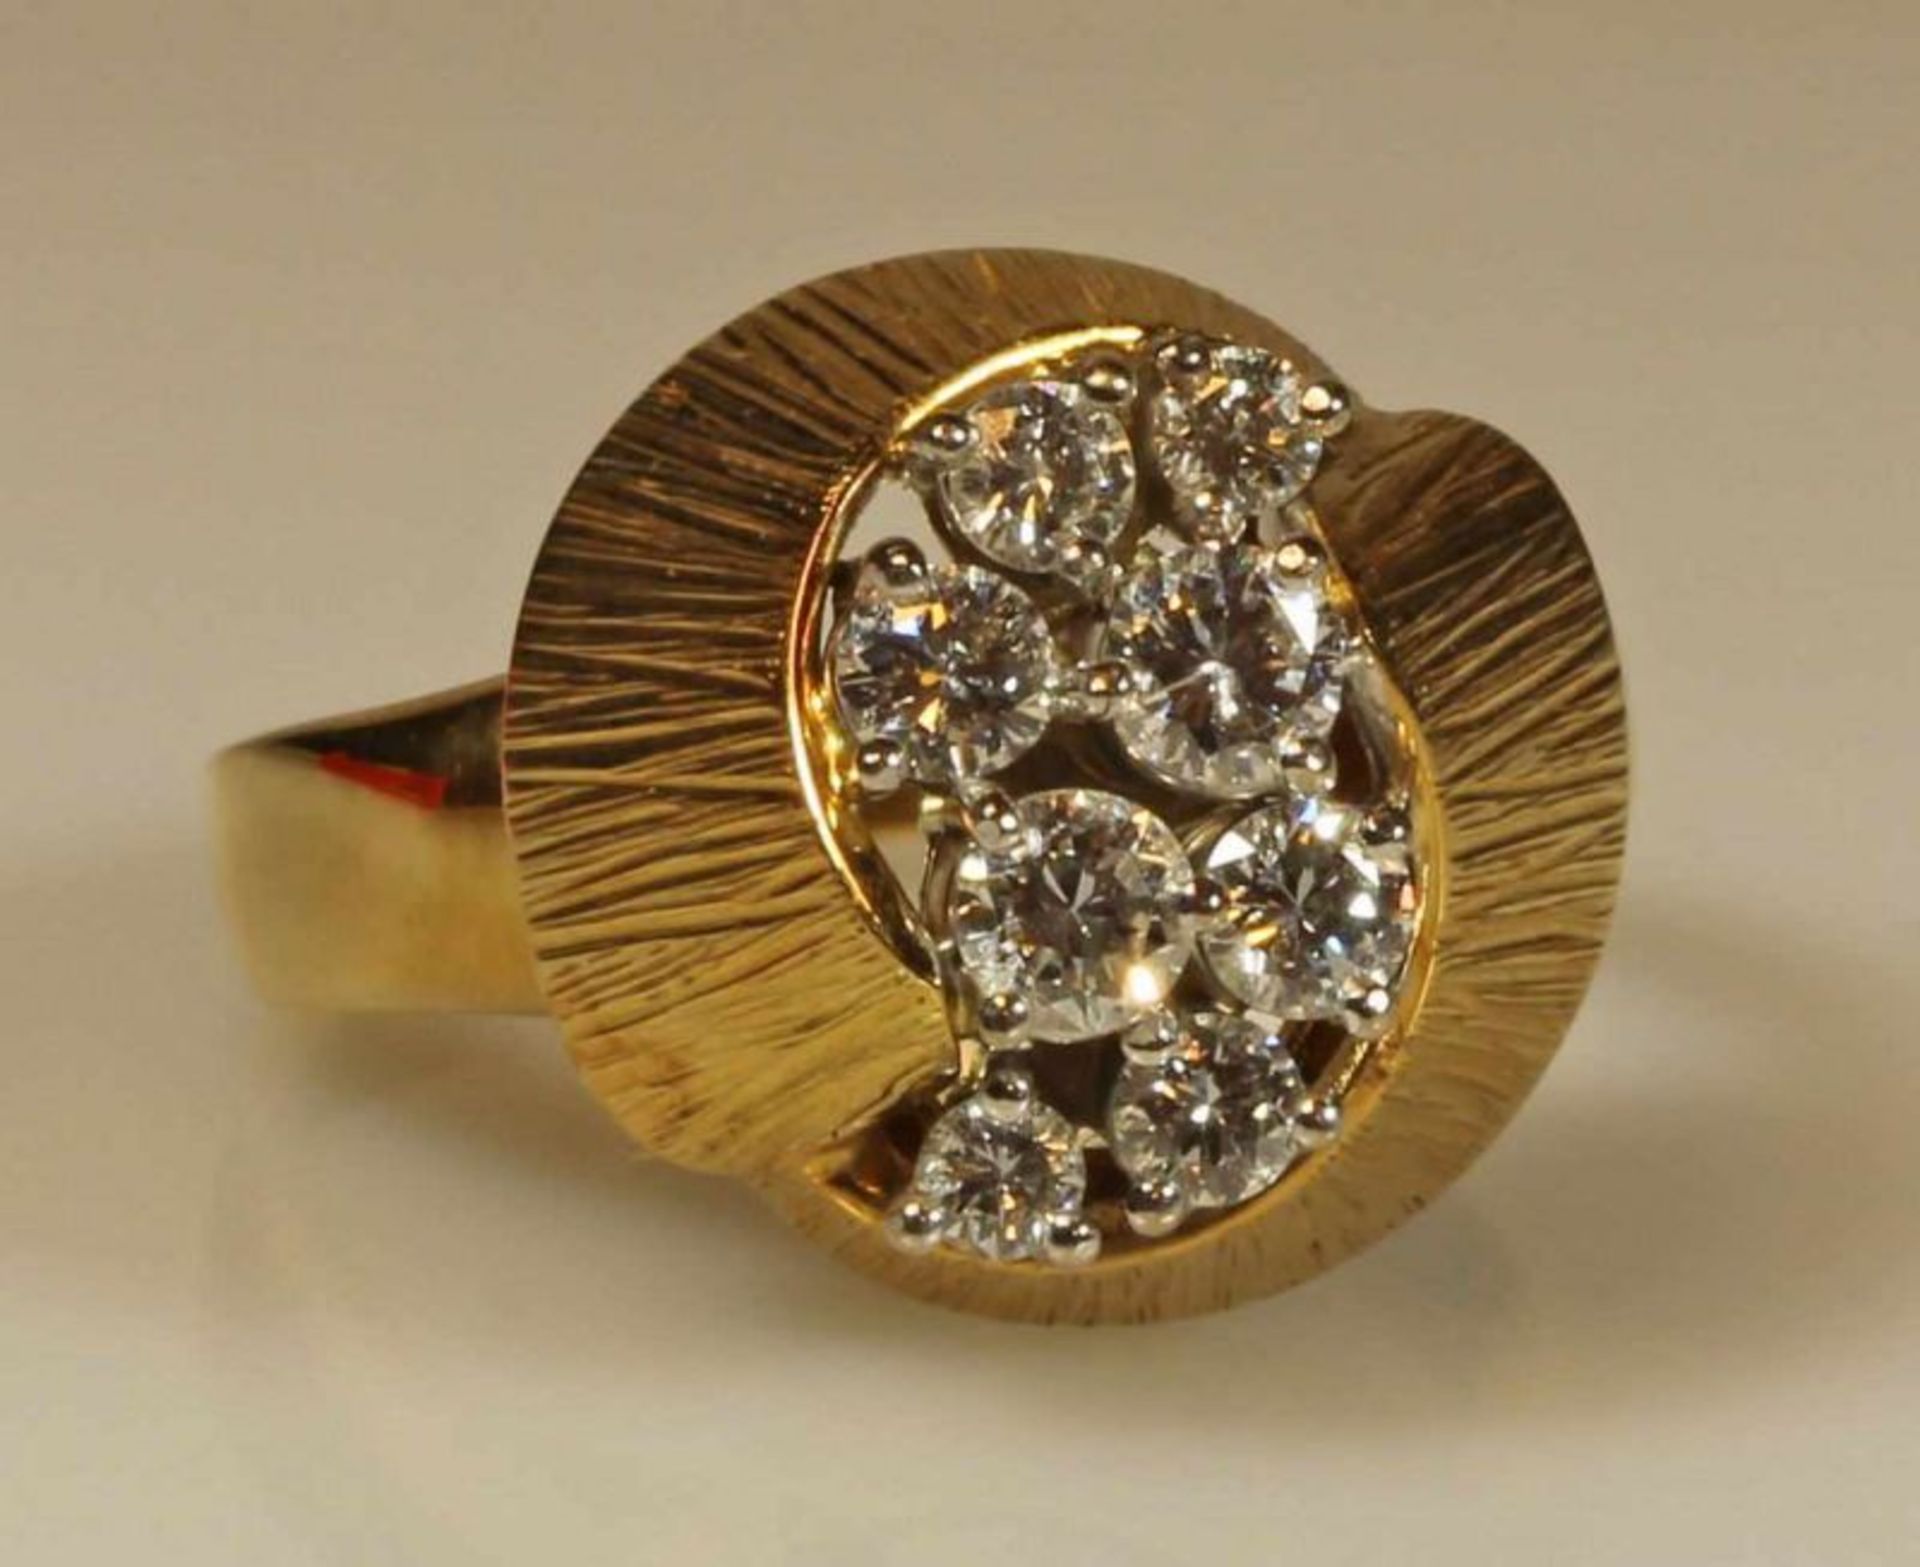 Ring, GG 750, 8 Brillanten zus. ca. 0.71 ct., 10 g, RM 18 20.00 % buyer's premium on the hammer